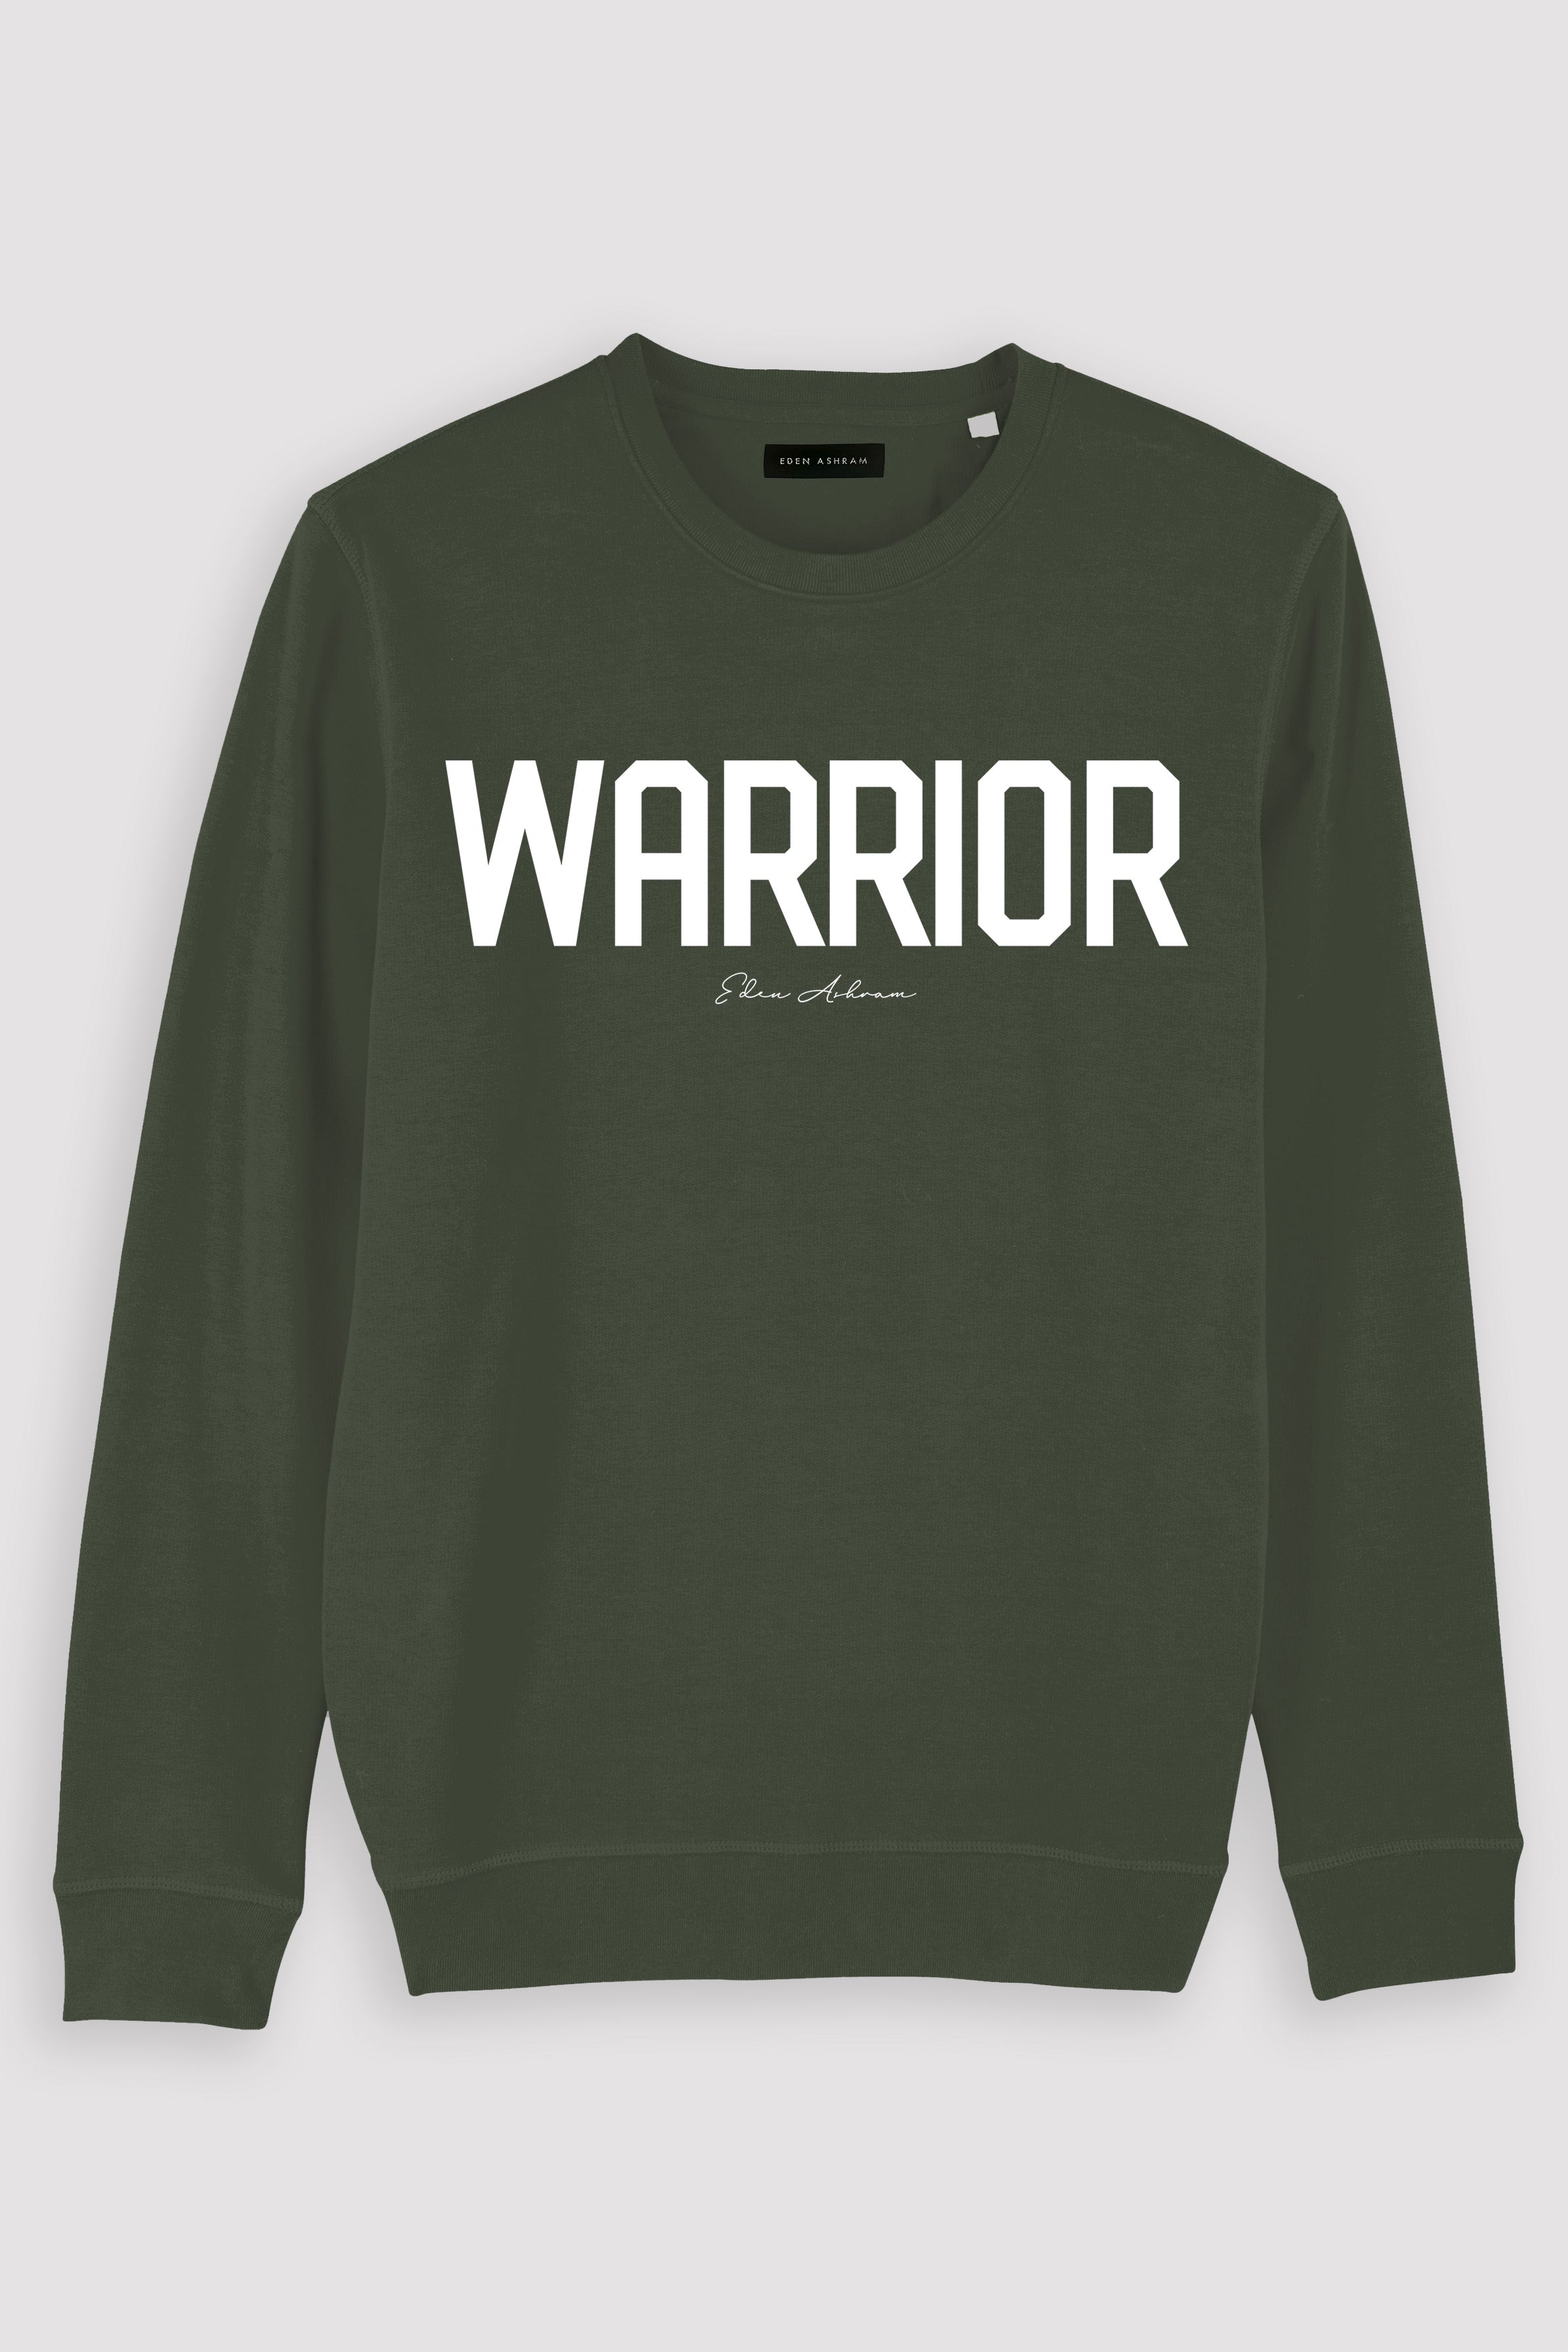 EDEN ASHRAM Warrior Premium Crew Neck Sweatshirt Khaki